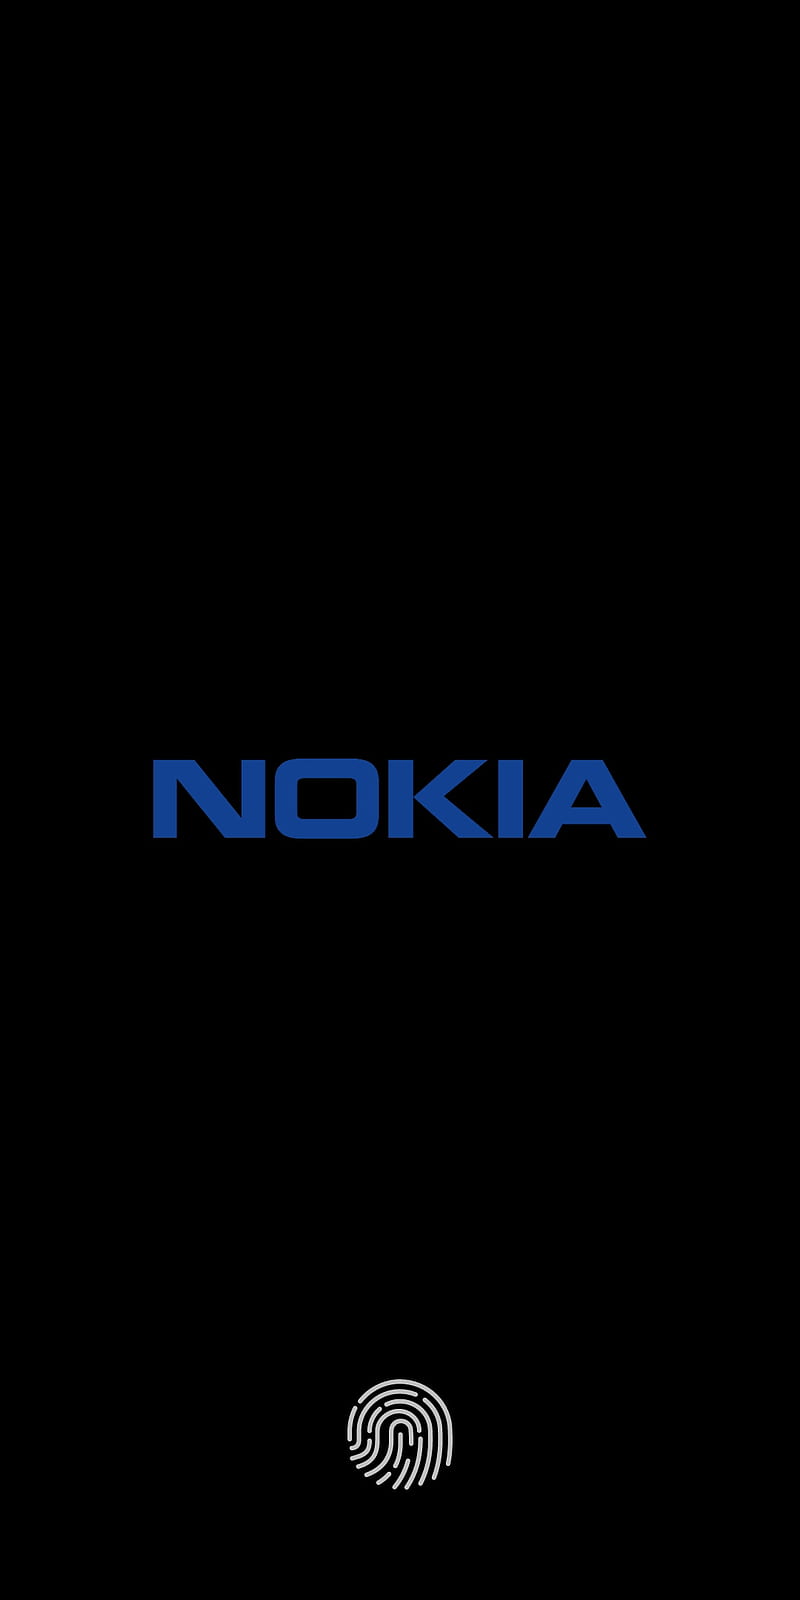 Đa dạng chủ đề và mẫu mã độc đáo của Nokia themes sẽ làm bạn bị thu hút để khám phá thêm hình ảnh liên quan đến từ khóa này.